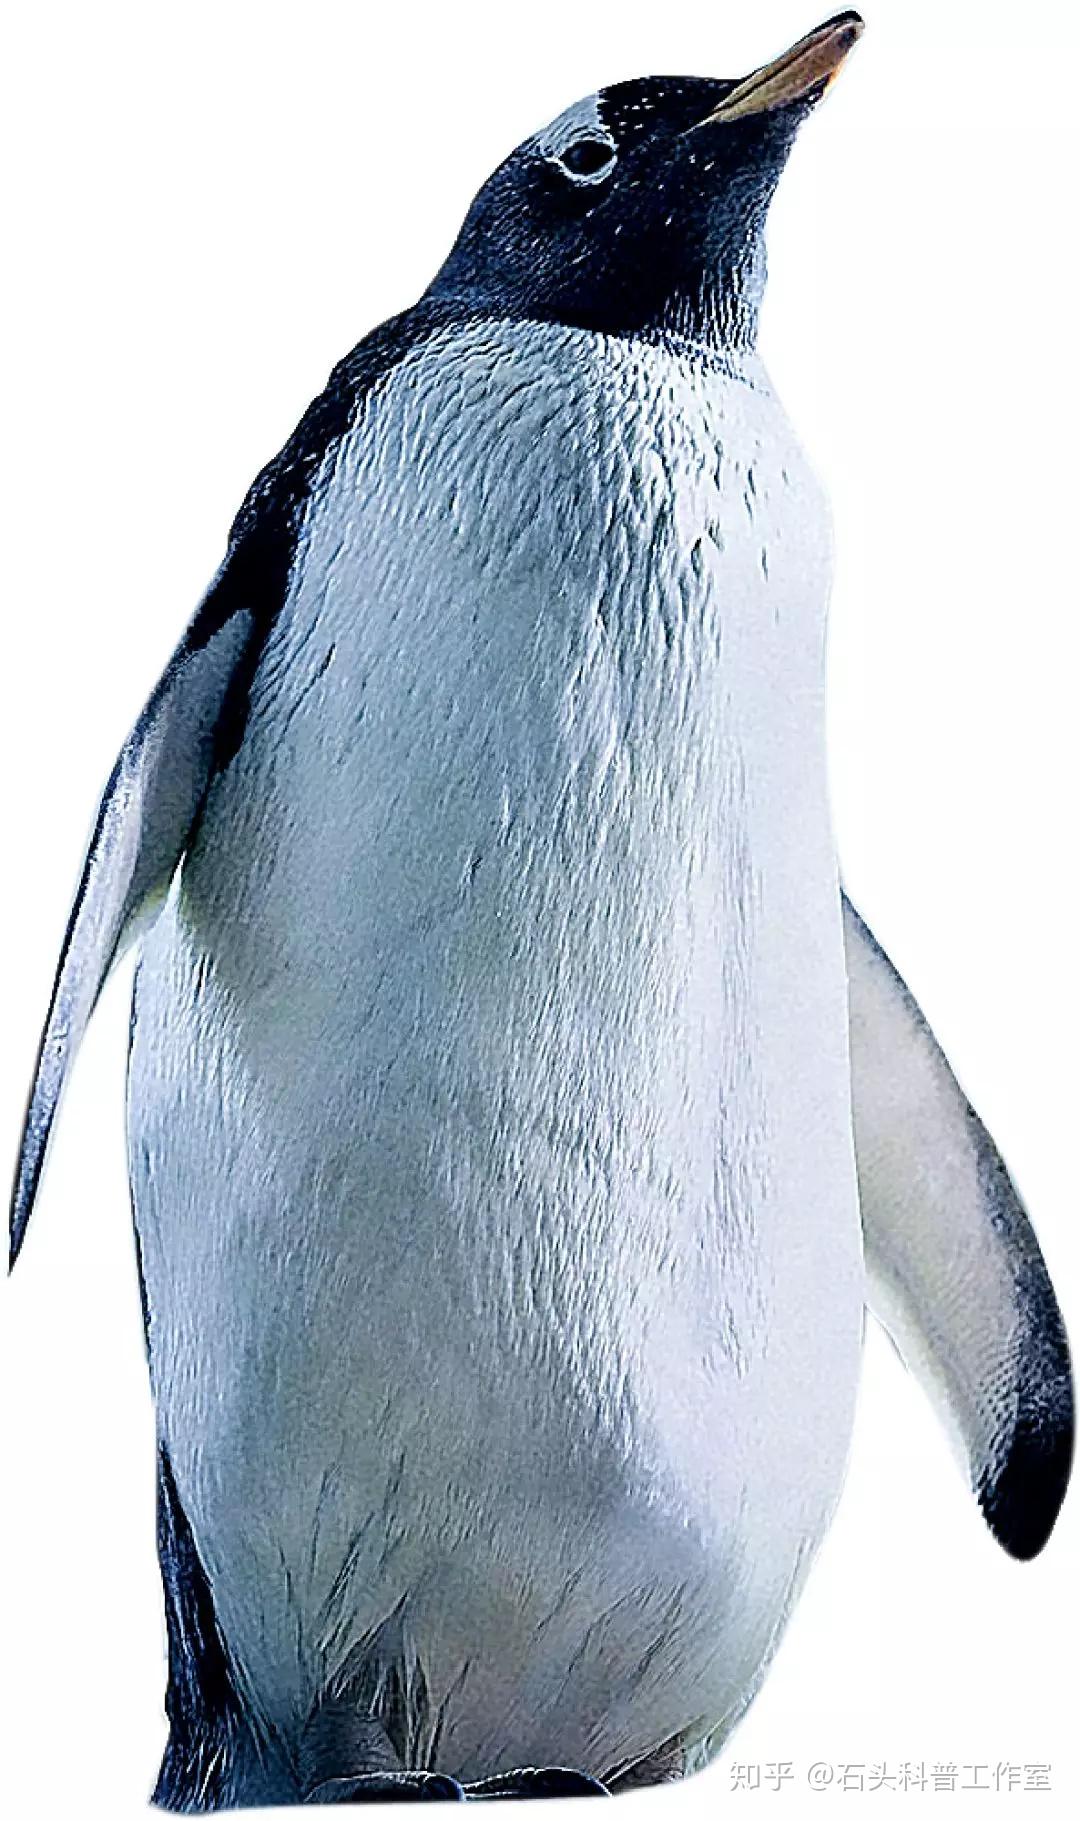 企鹅 萌宠 极地物种 企鹅 儿童桌面专用 萌宠动物壁纸(动物静态壁纸) - 静态壁纸下载 - 元气壁纸